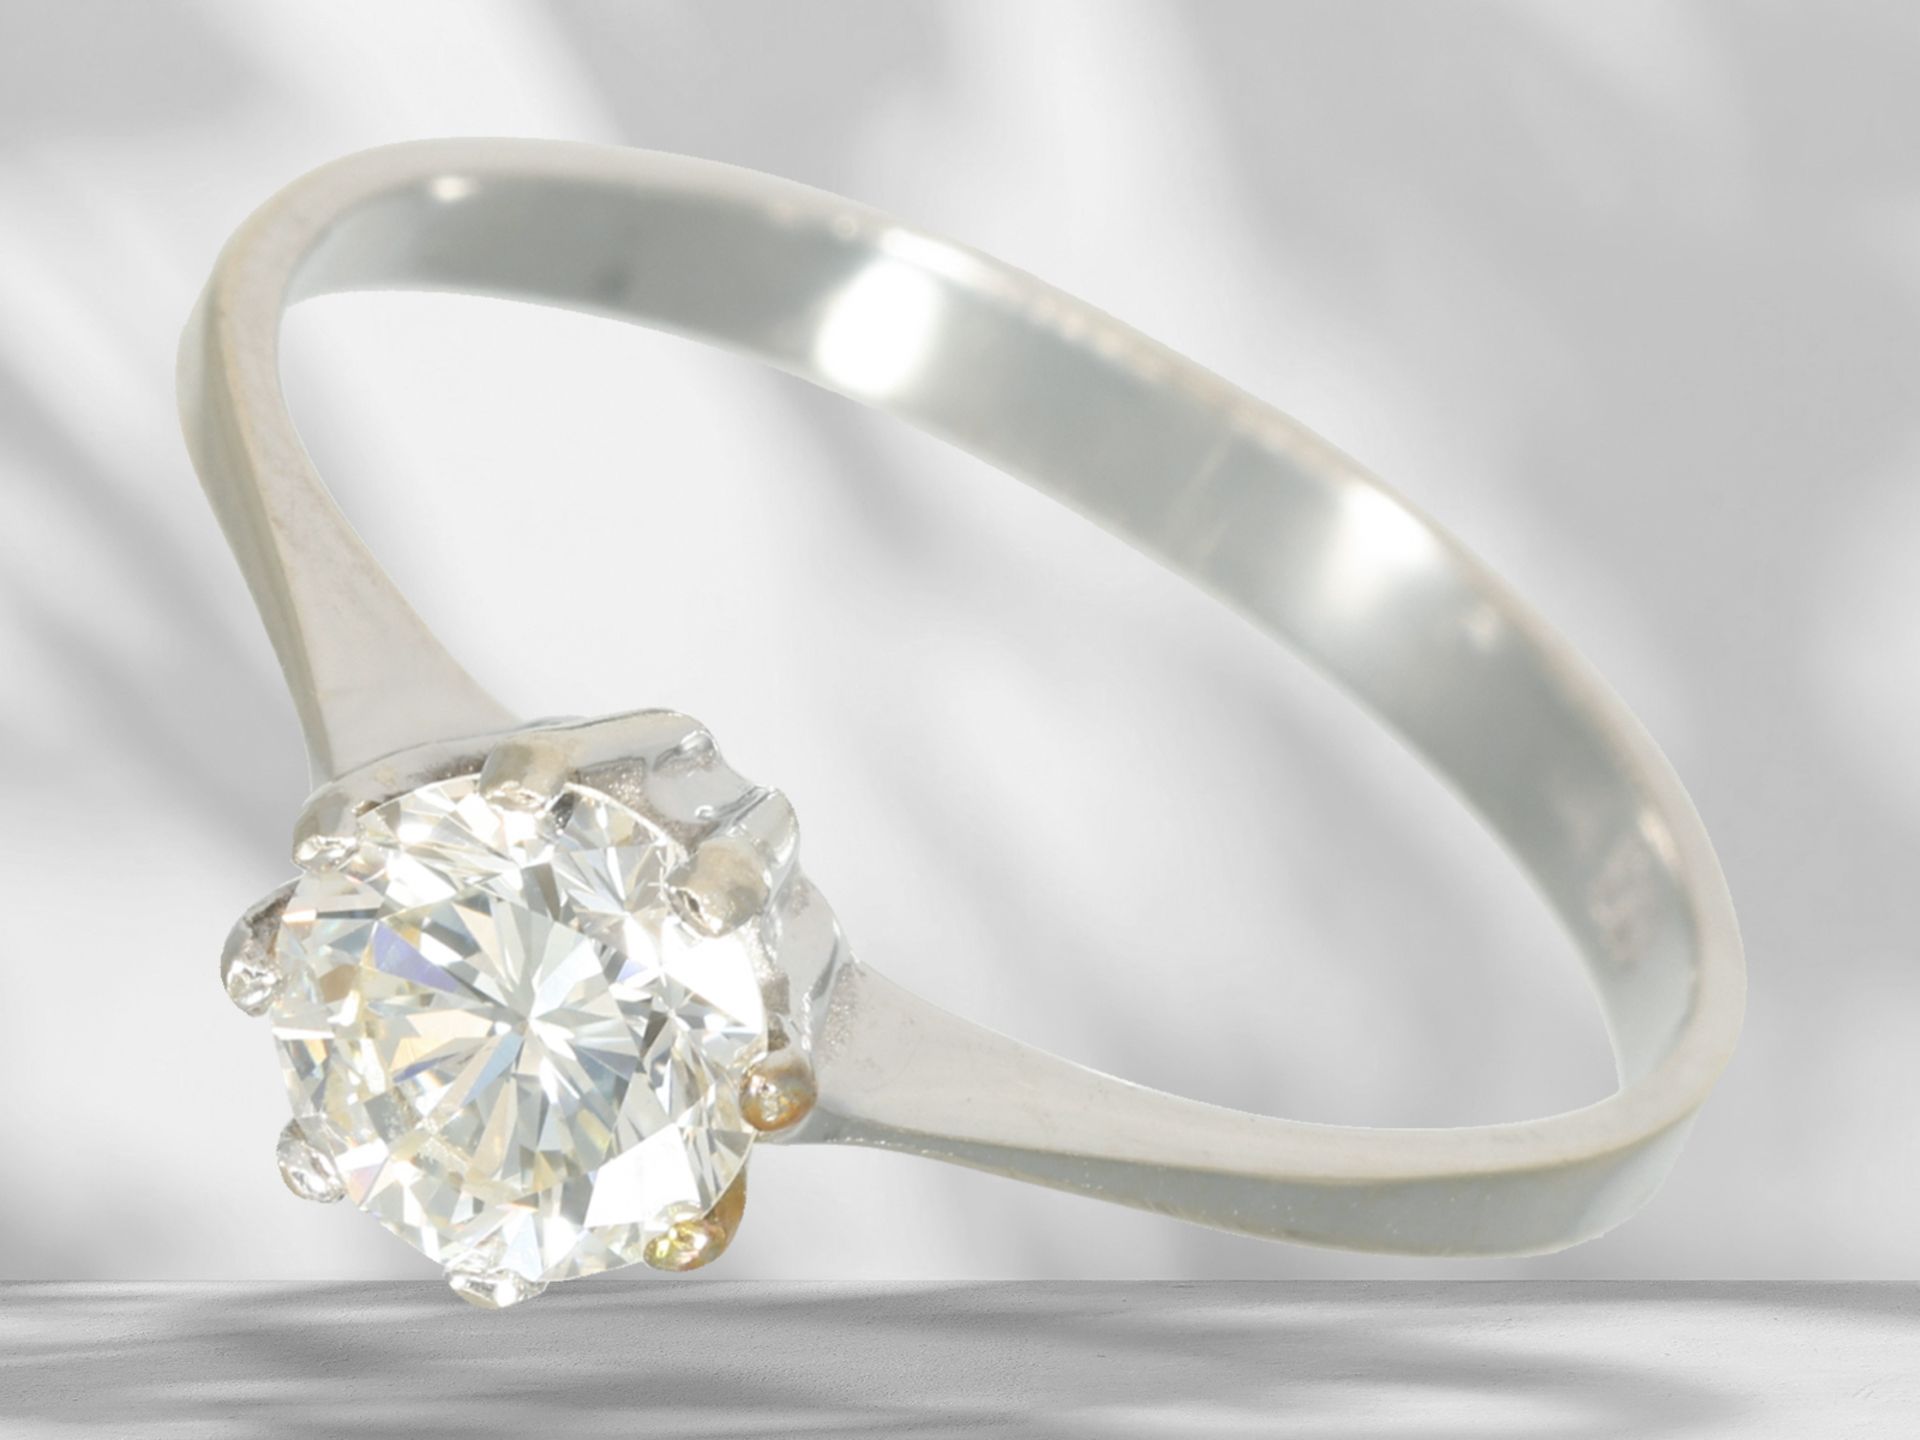 White gold solitaire/brilliant-cut diamond ring, beautiful brilliant-cut diamond of approx. 0.6ct